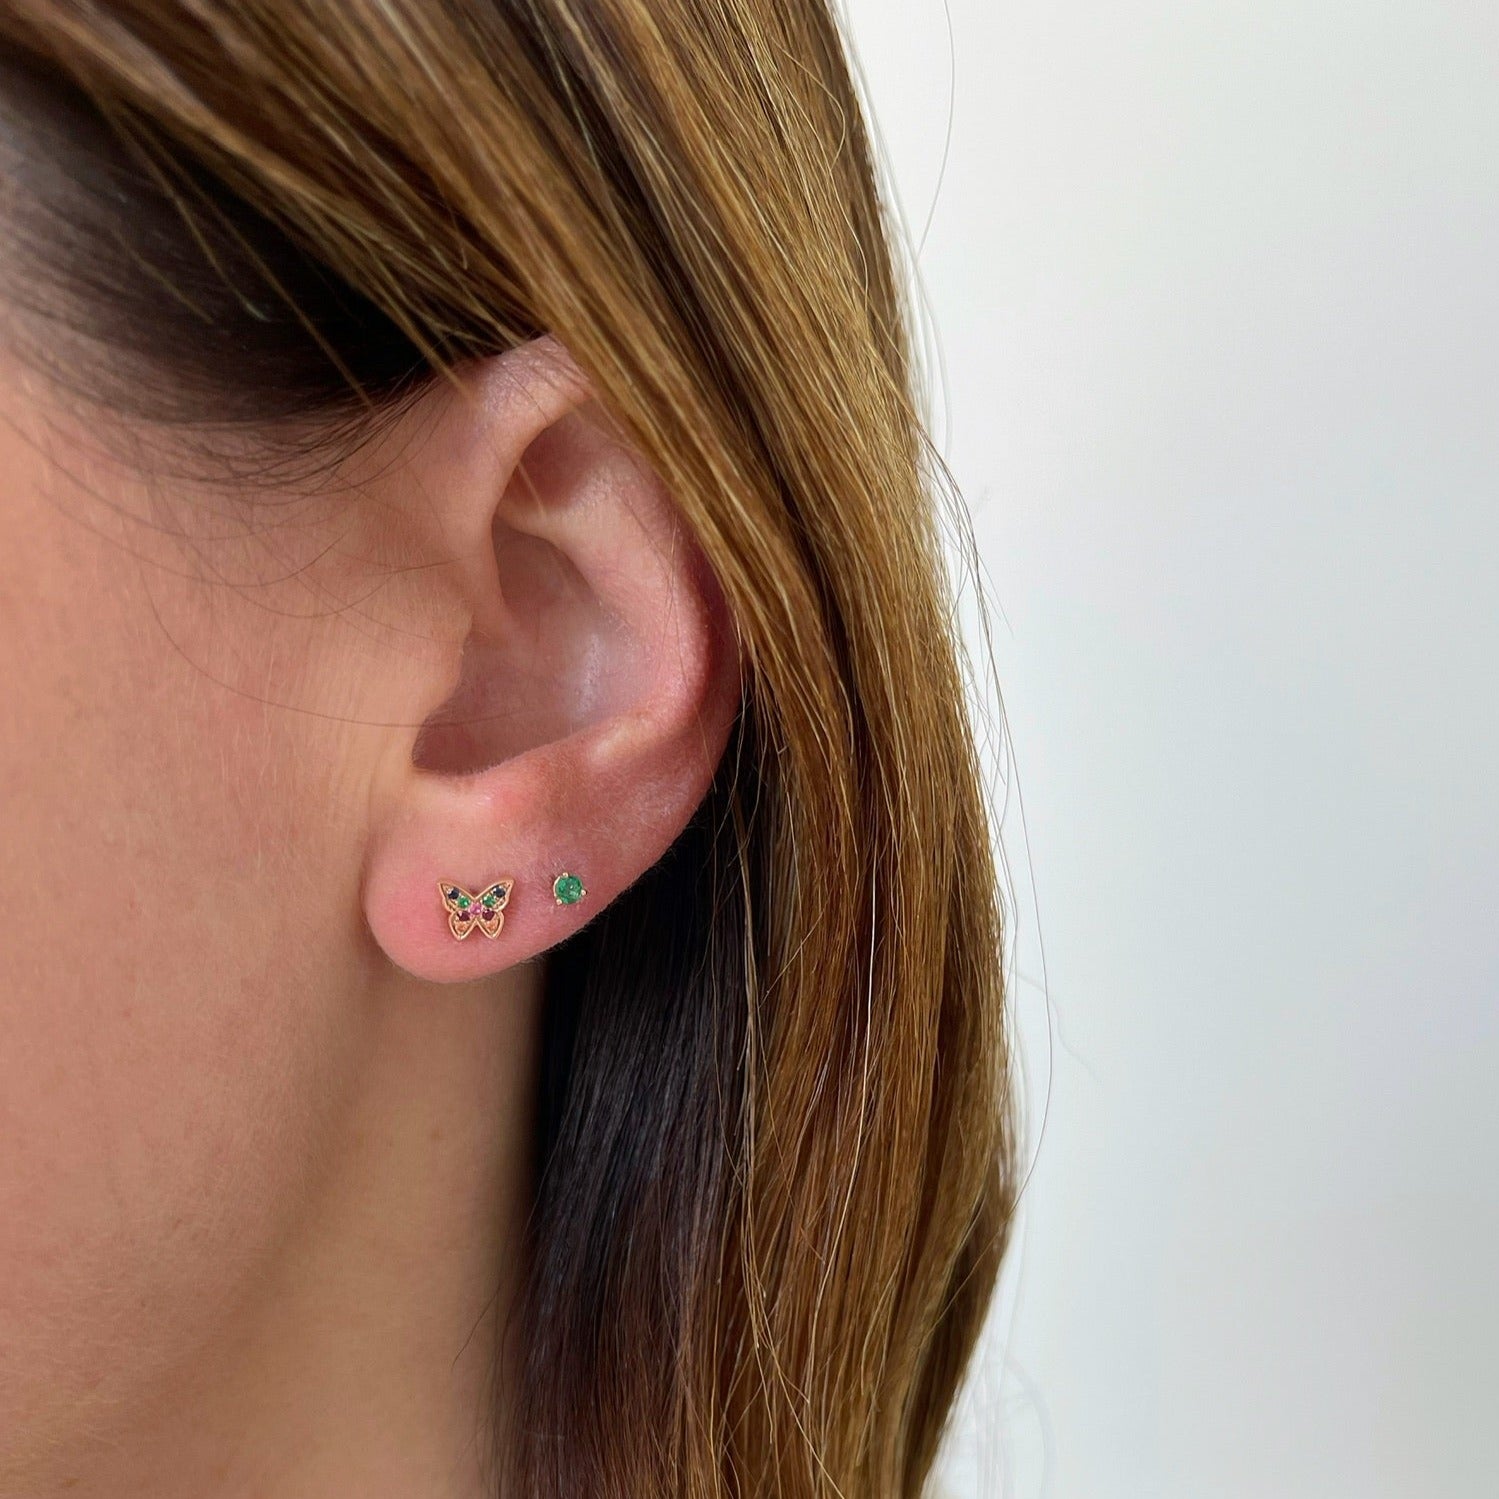 Mini Rainbow Butterfly Stud Earring styled on ear of model